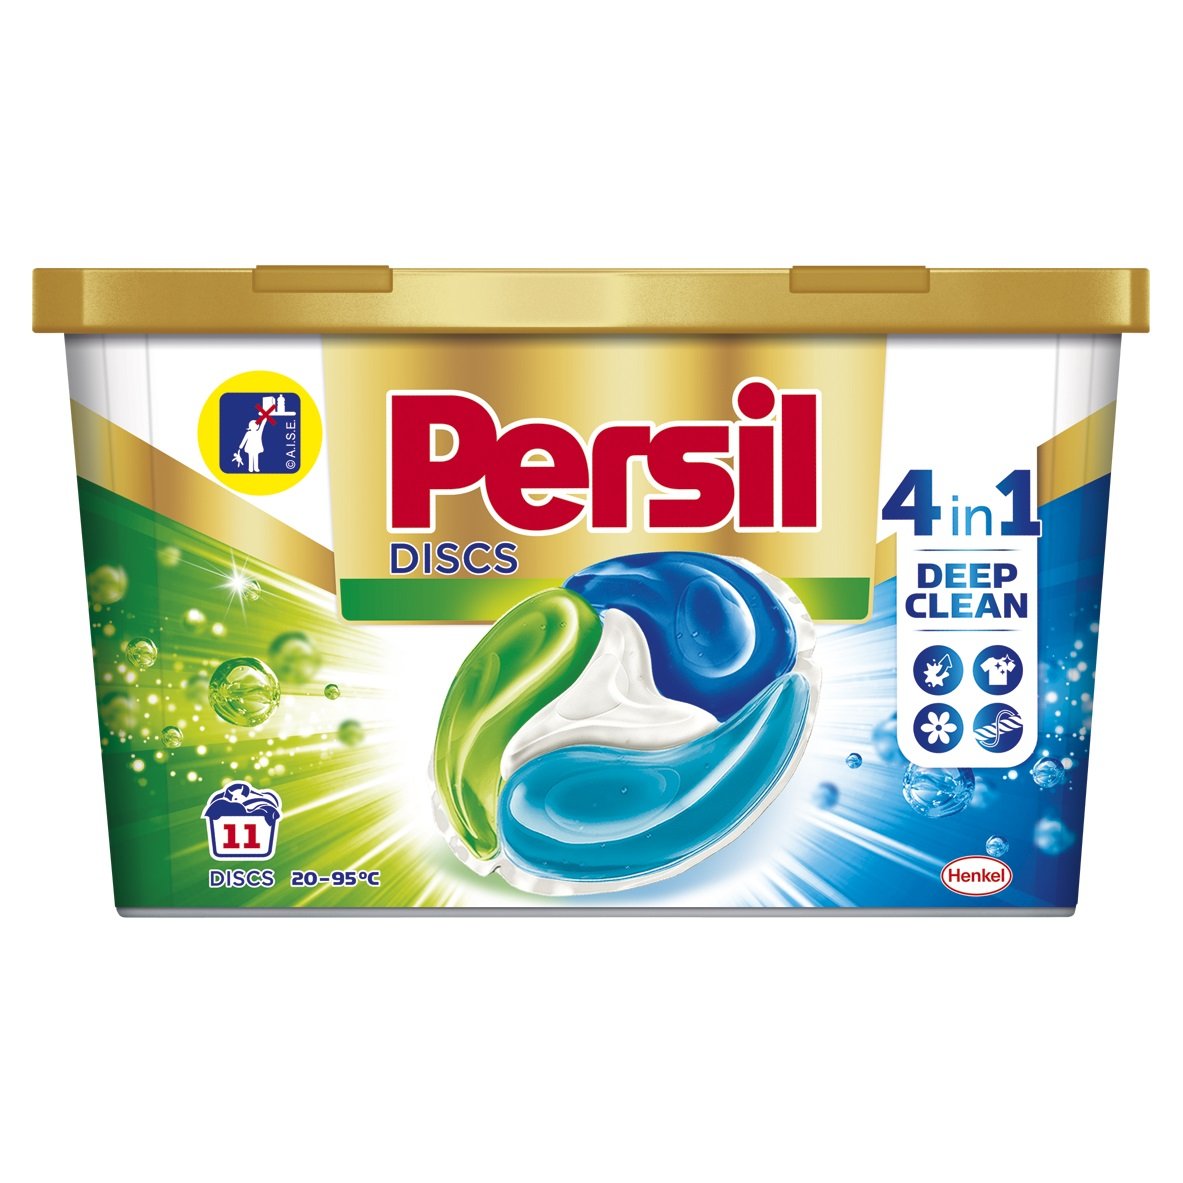 Гель для стирки в капсулах Persil Discs Universal Deep Clean, 11 шт. (796703) - фото 1